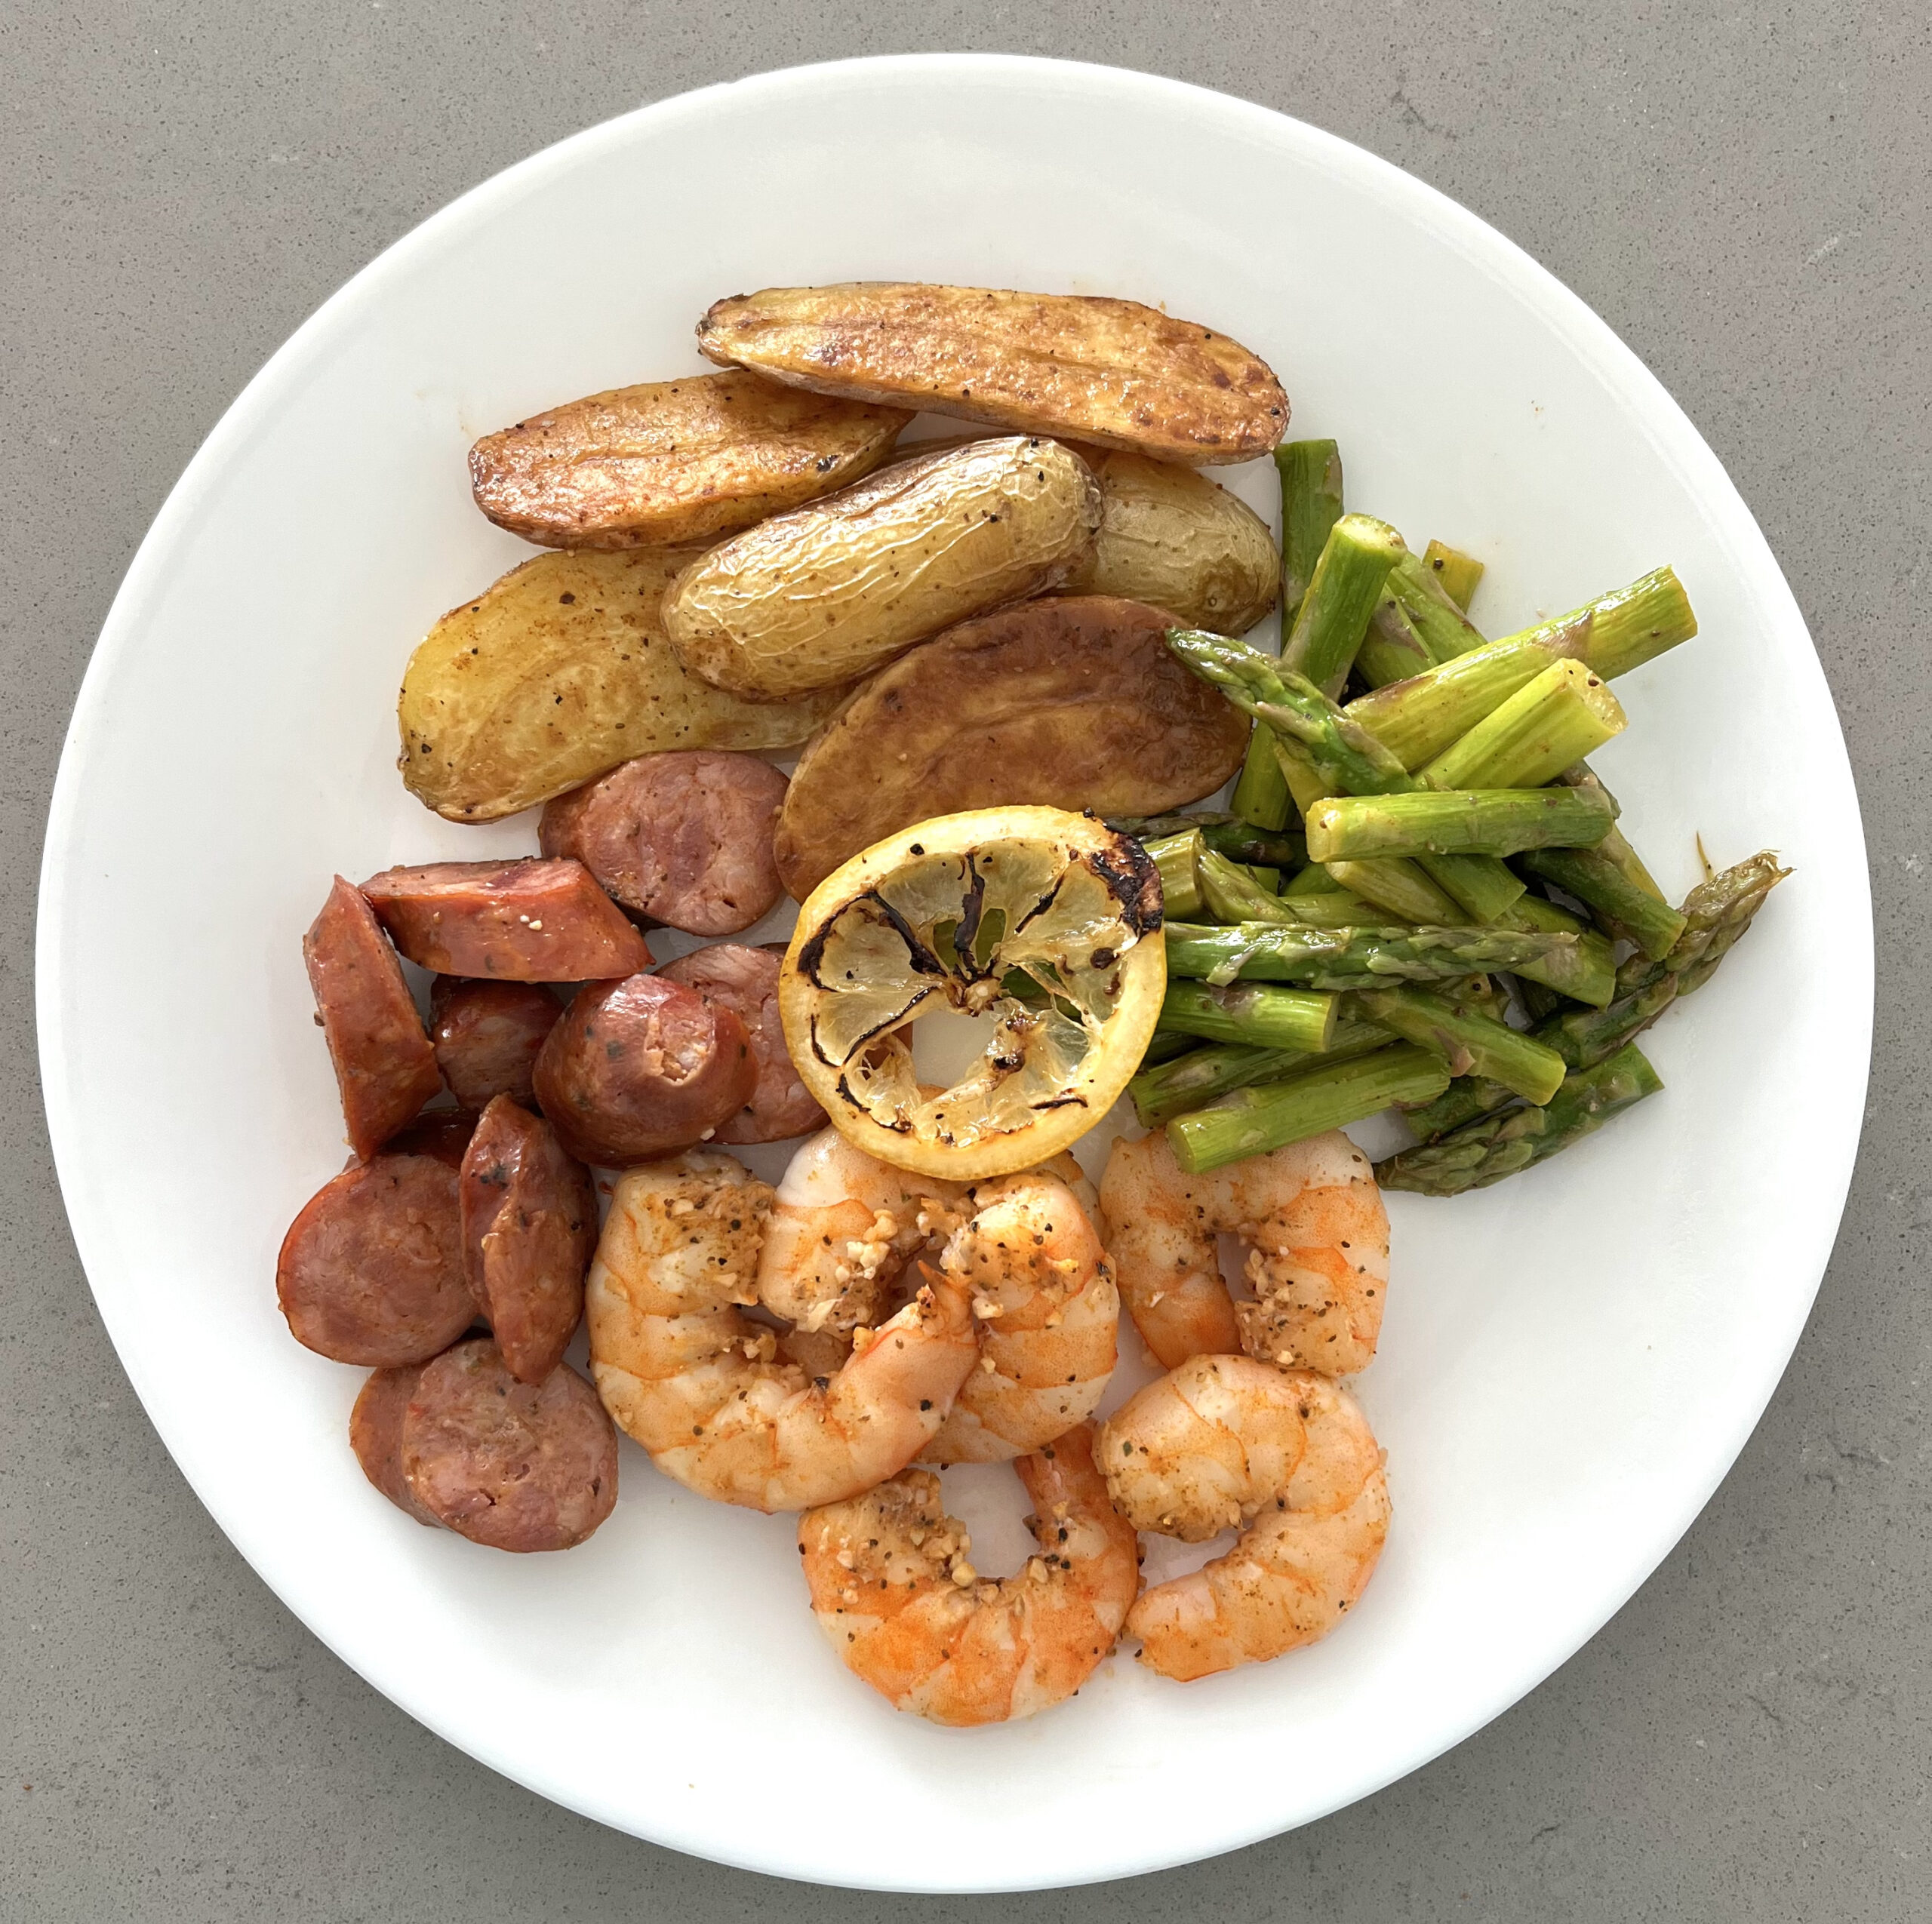 https://sarahkoszyk.com/wp-content/uploads/2022/12/Sheet-Pan-Cajun-Shrimp-Sausage-Asparagus-Potato-Plate-scaled.jpg